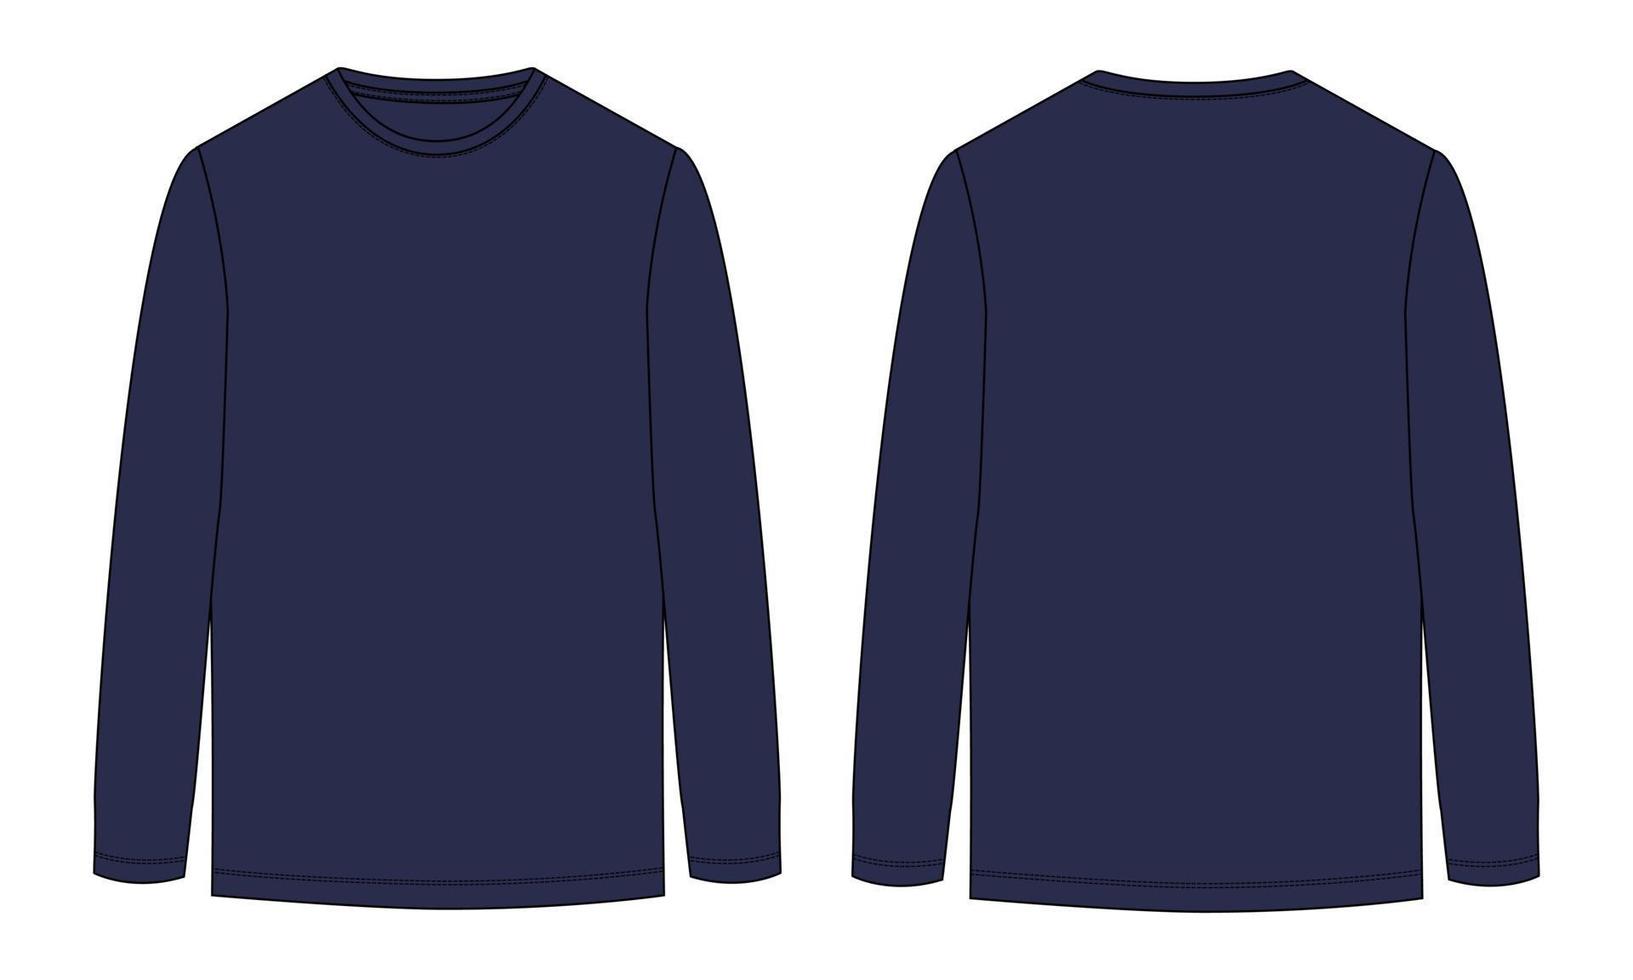 camiseta de manga larga moda técnica boceto plano ilustración vectorial plantilla de color azul marino vistas frontal y posterior. diseño de indumentaria maqueta cad edición fácil y personalizable vector